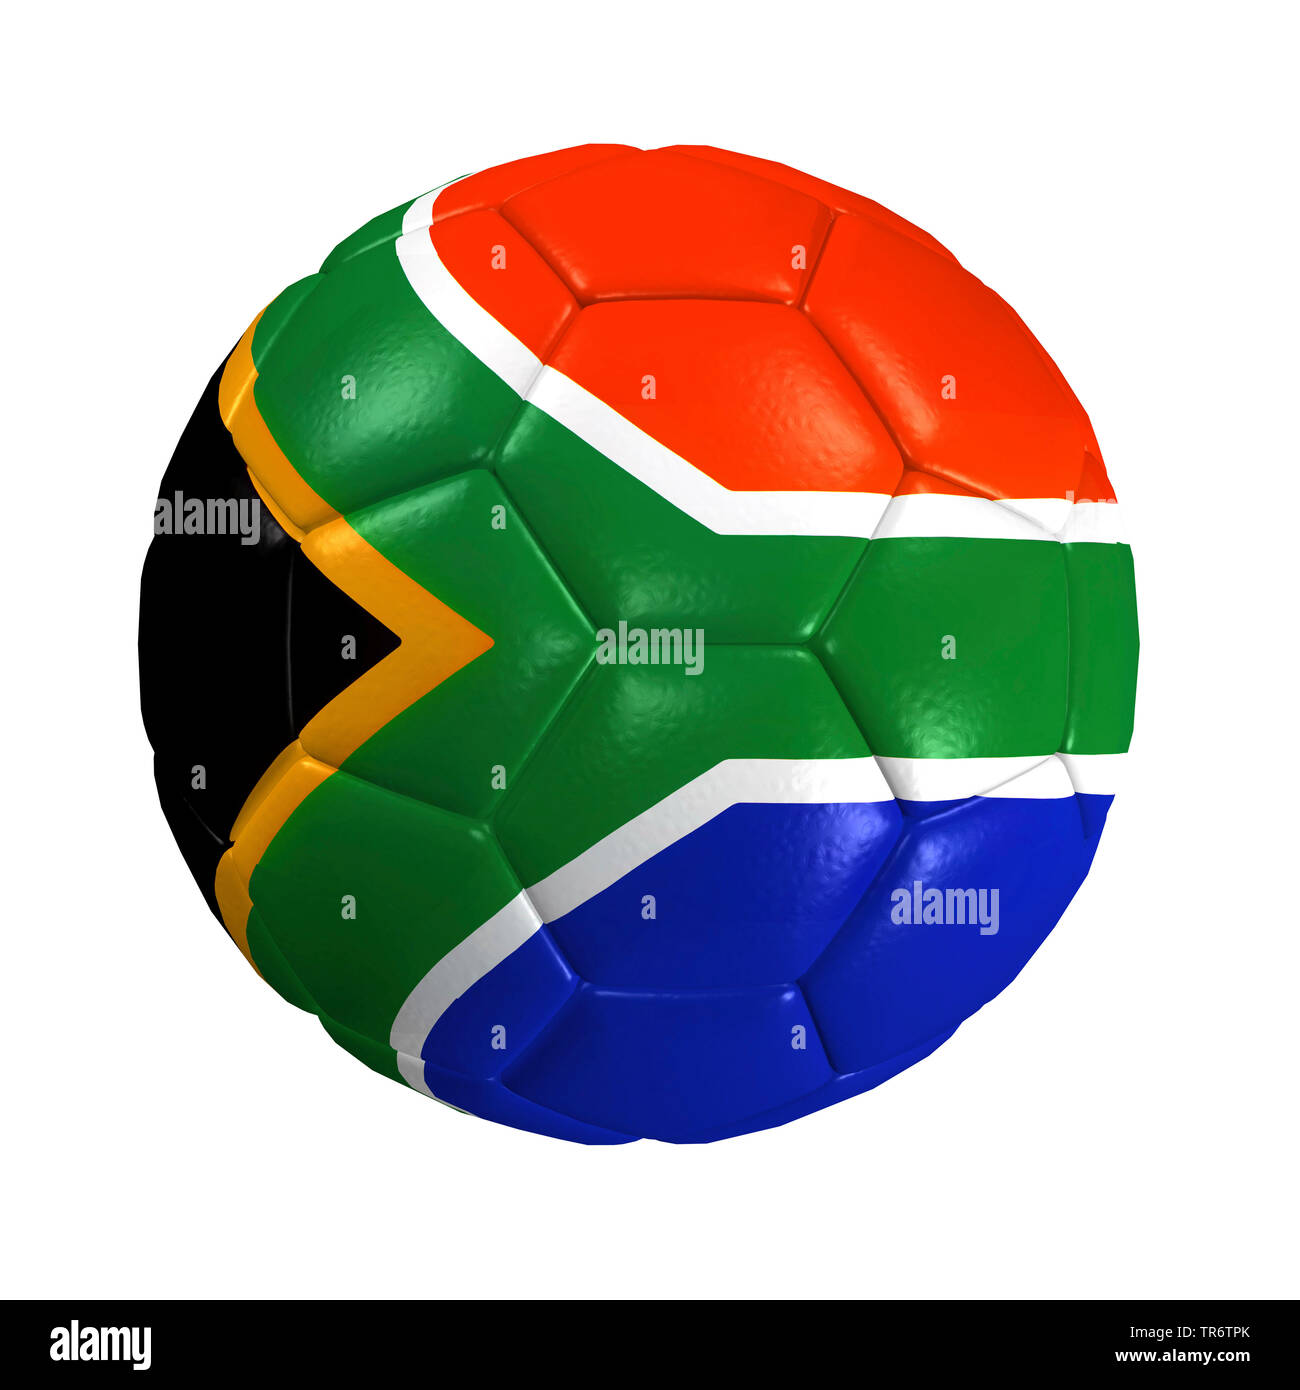 Ballon de soccer isolé avec le drapeau de l'Afrique du Sud, computer graphic Banque D'Images